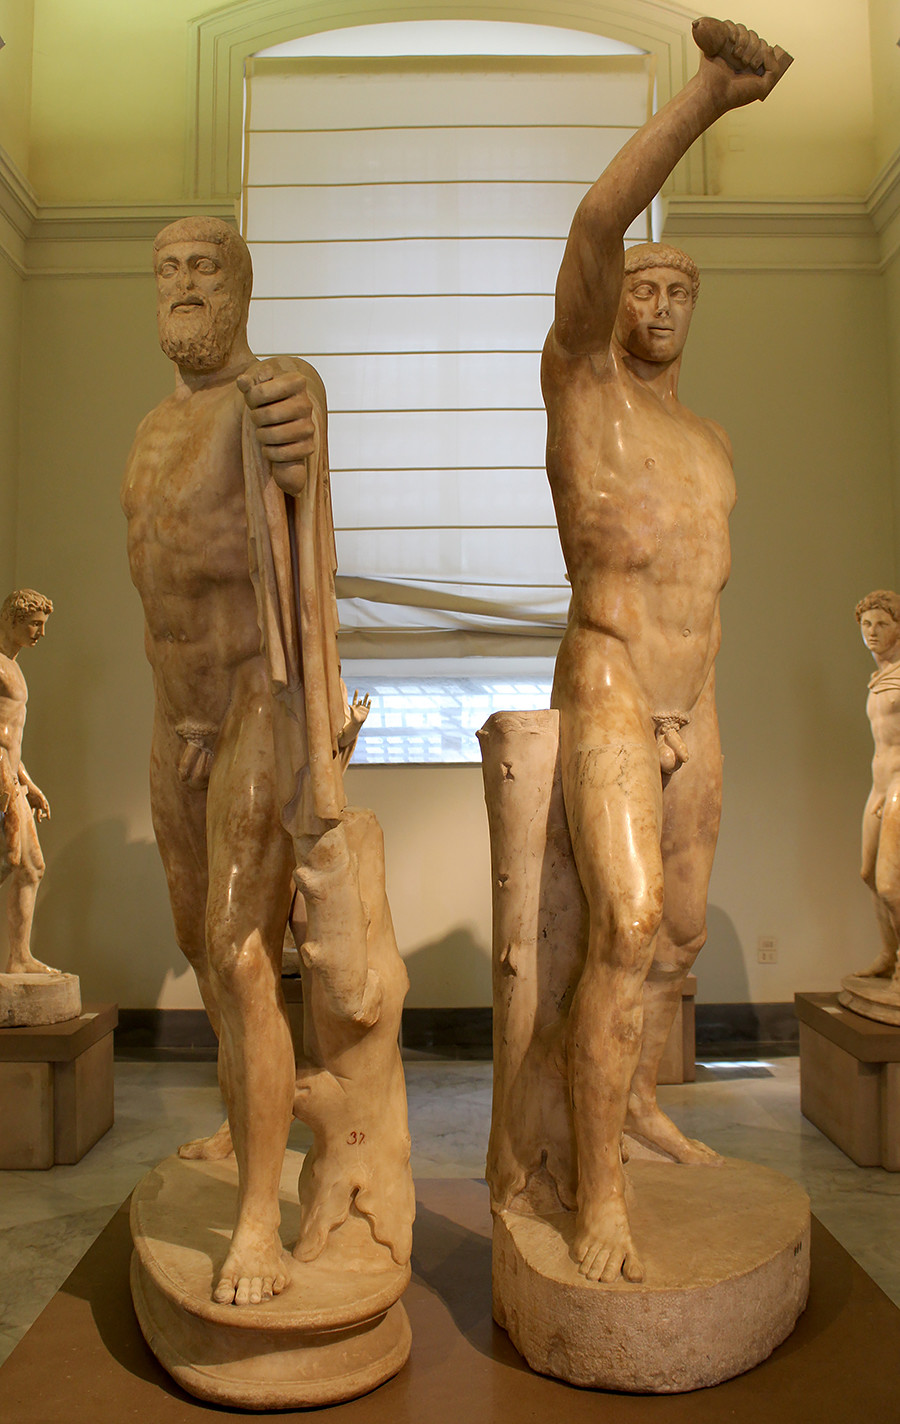 'Harmodio y Aristogitón', copia romana de la estatua ateniense de Kritios y Nesiotes.
